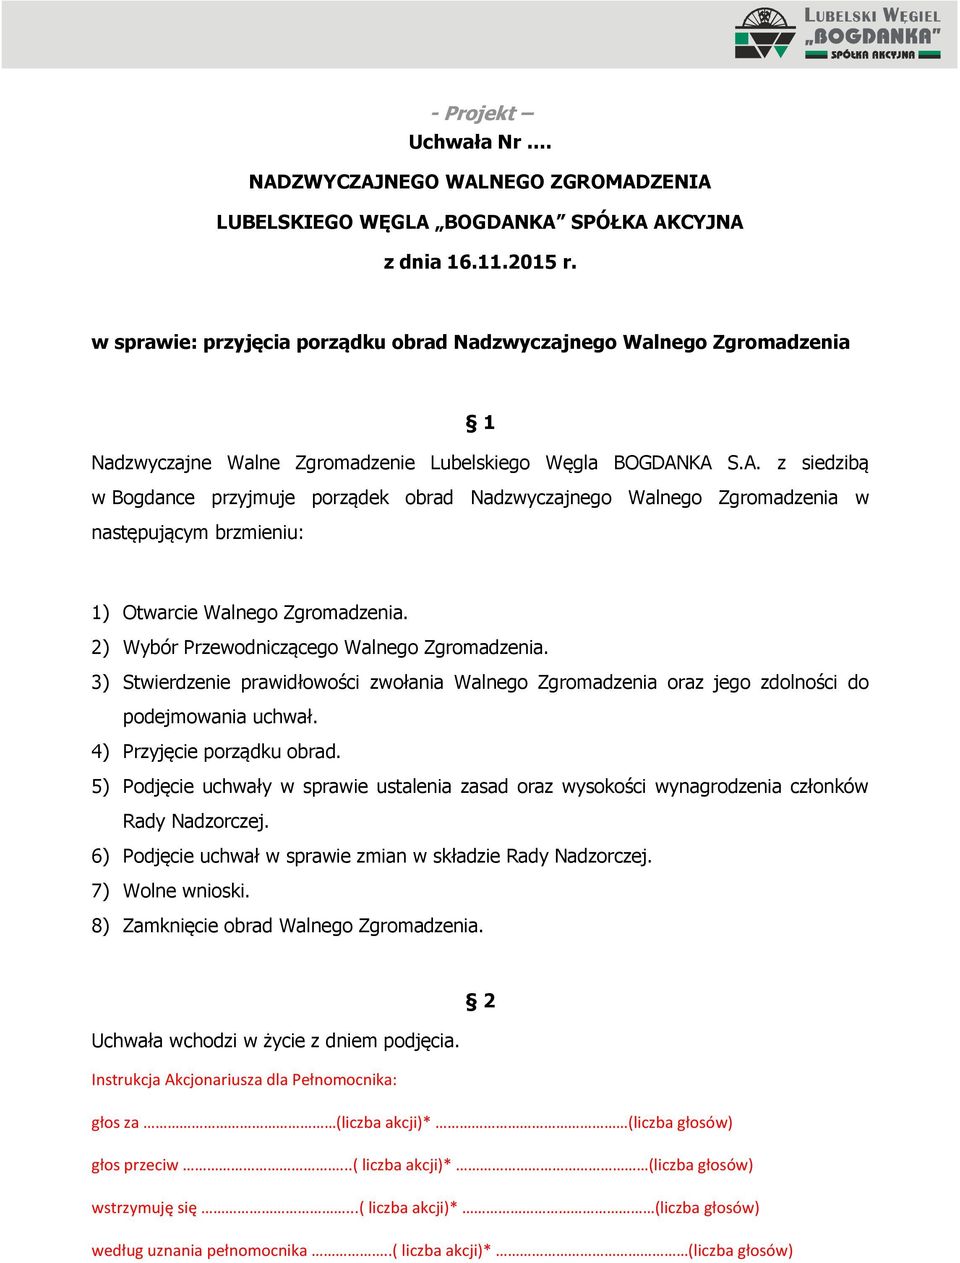 KA S.A. z siedzibą w Bogdance przyjmuje porządek obrad Nadzwyczajnego Walnego Zgromadzenia w następującym brzmieniu: 1) Otwarcie Walnego Zgromadzenia. 2) Wybór Przewodniczącego Walnego Zgromadzenia.